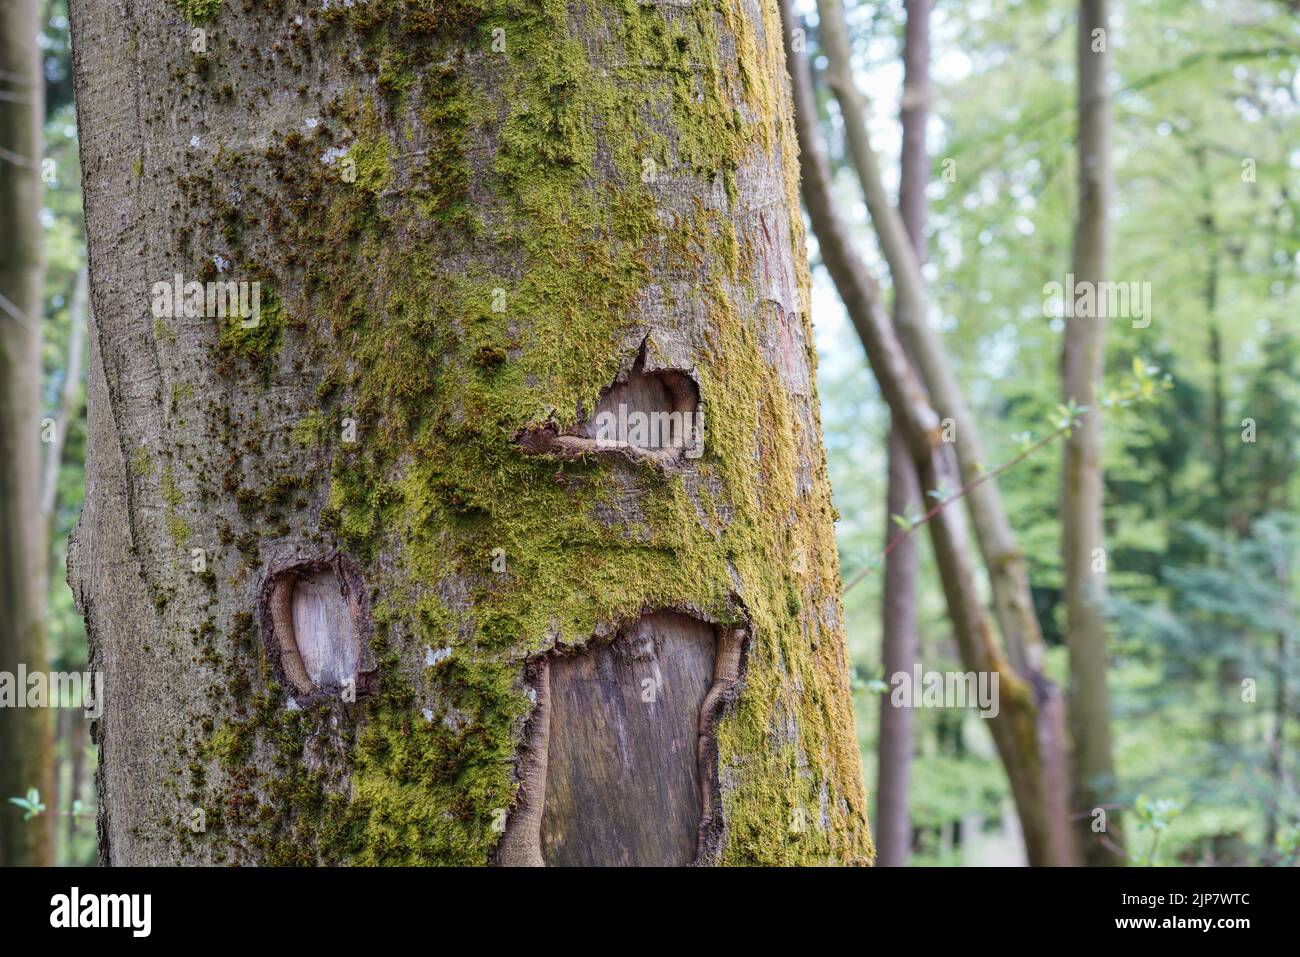 Bayerischer Wald im Frühling mit frischem Grün und blühenden Bäumen Stock Photo